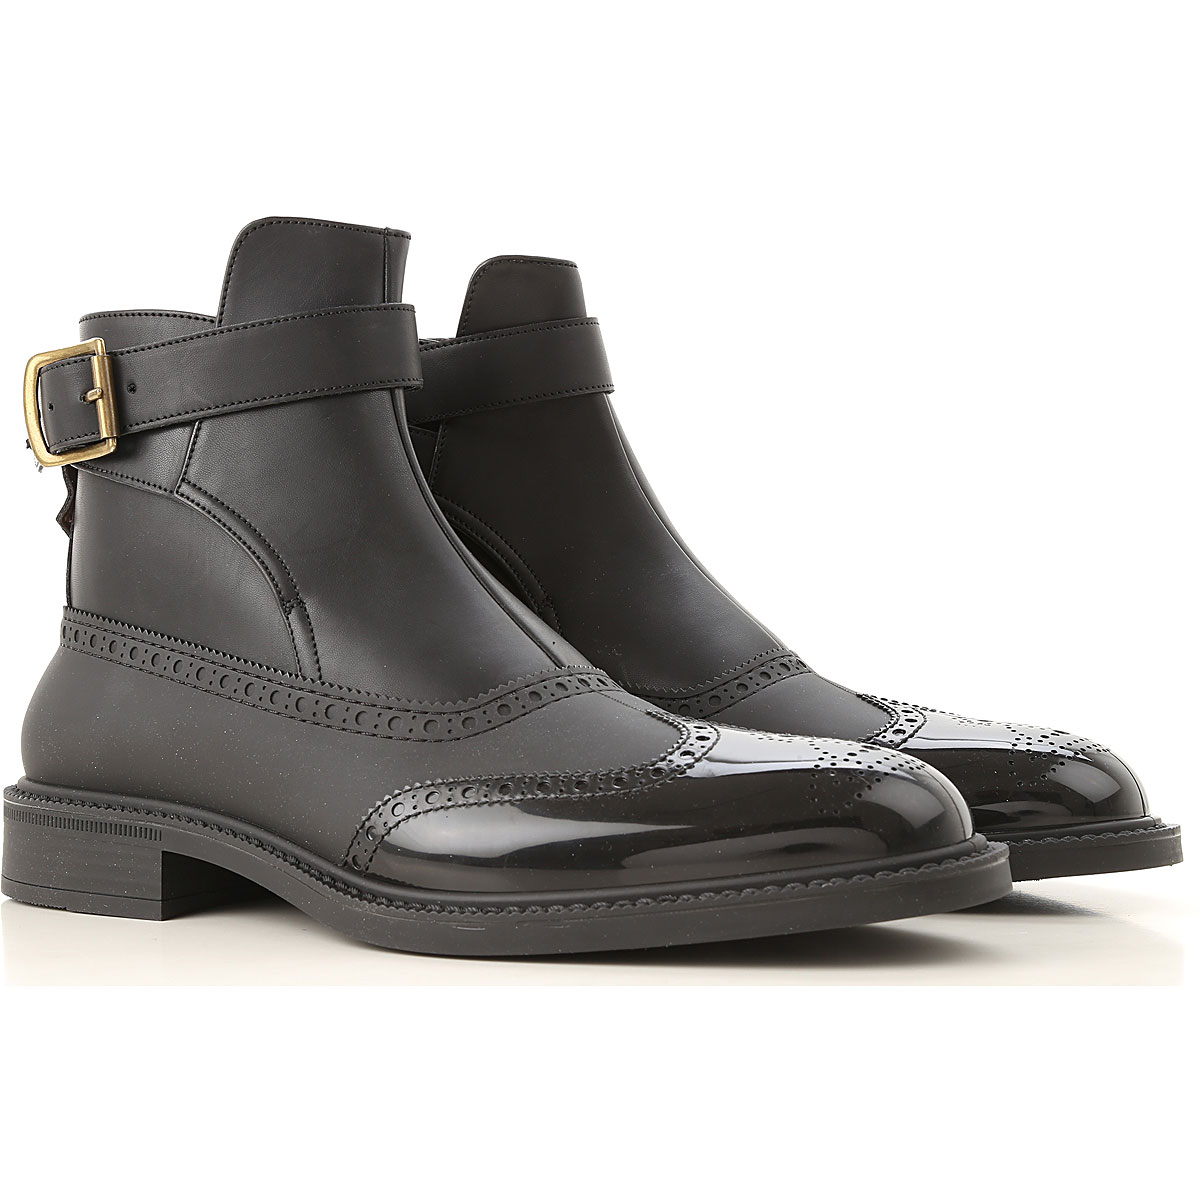 Mens Shoes Vivienne Westwood, Style code: 71010047-00710-n401